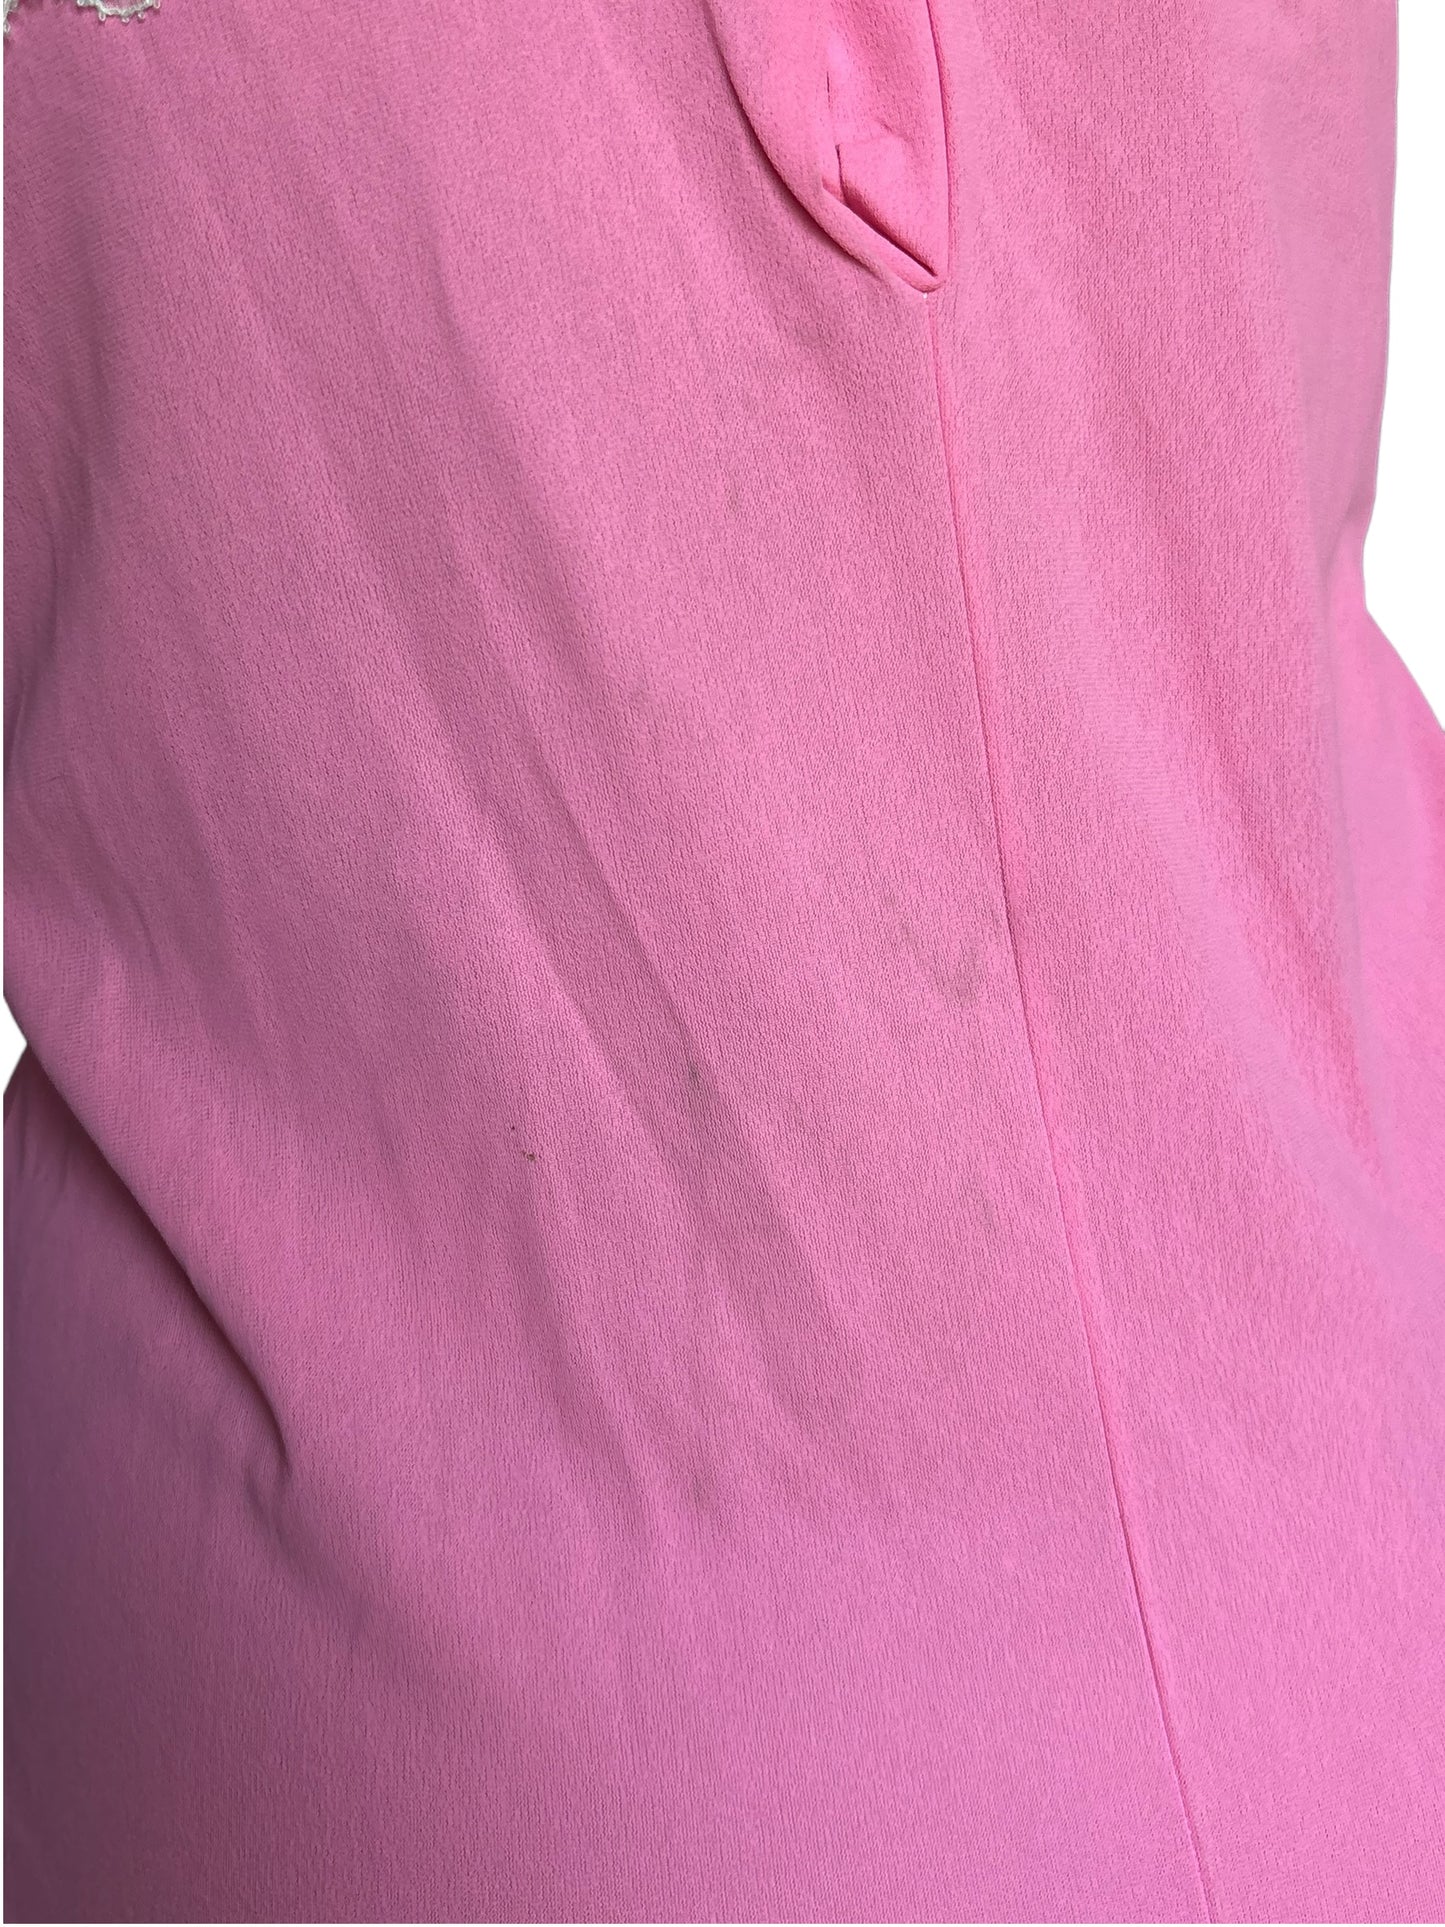 Rose's Thorn Pink Vintage Dress - M